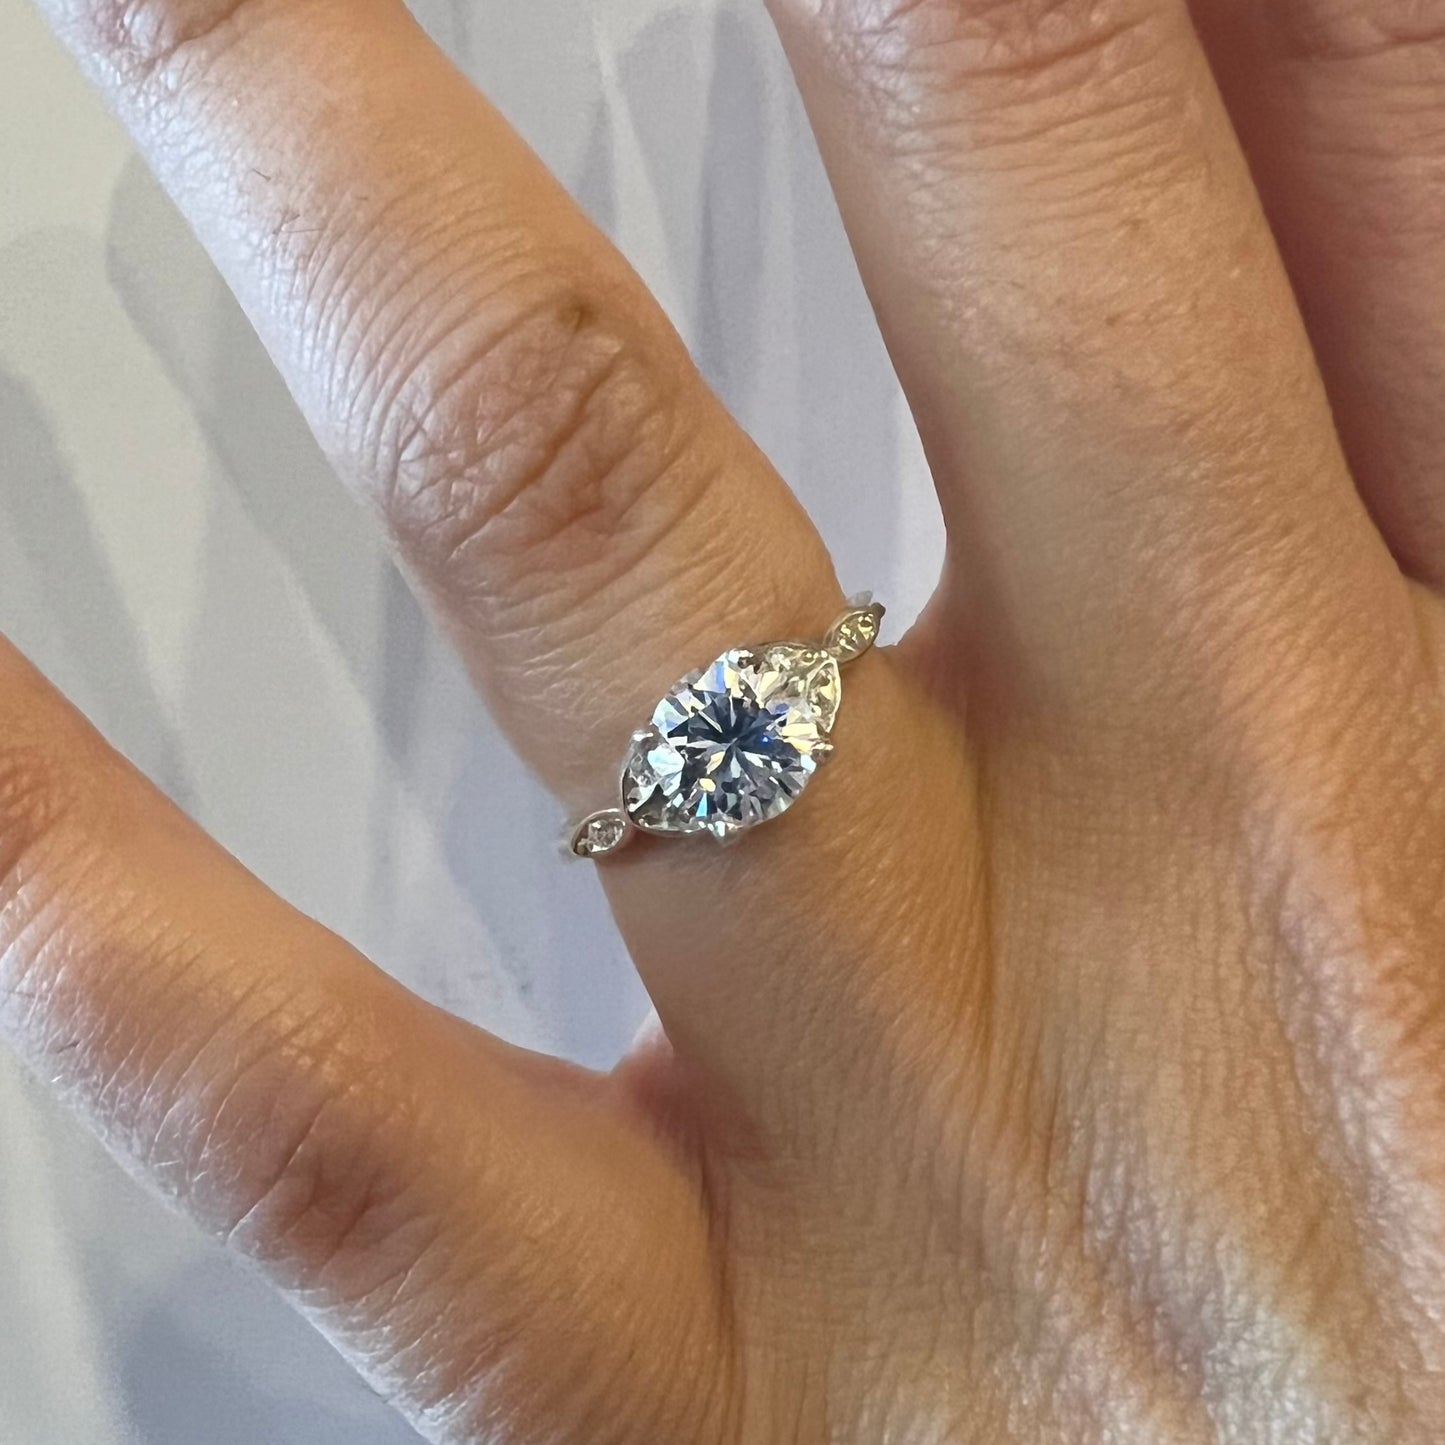 e. scott nuptials… The Nouveau engagement ring